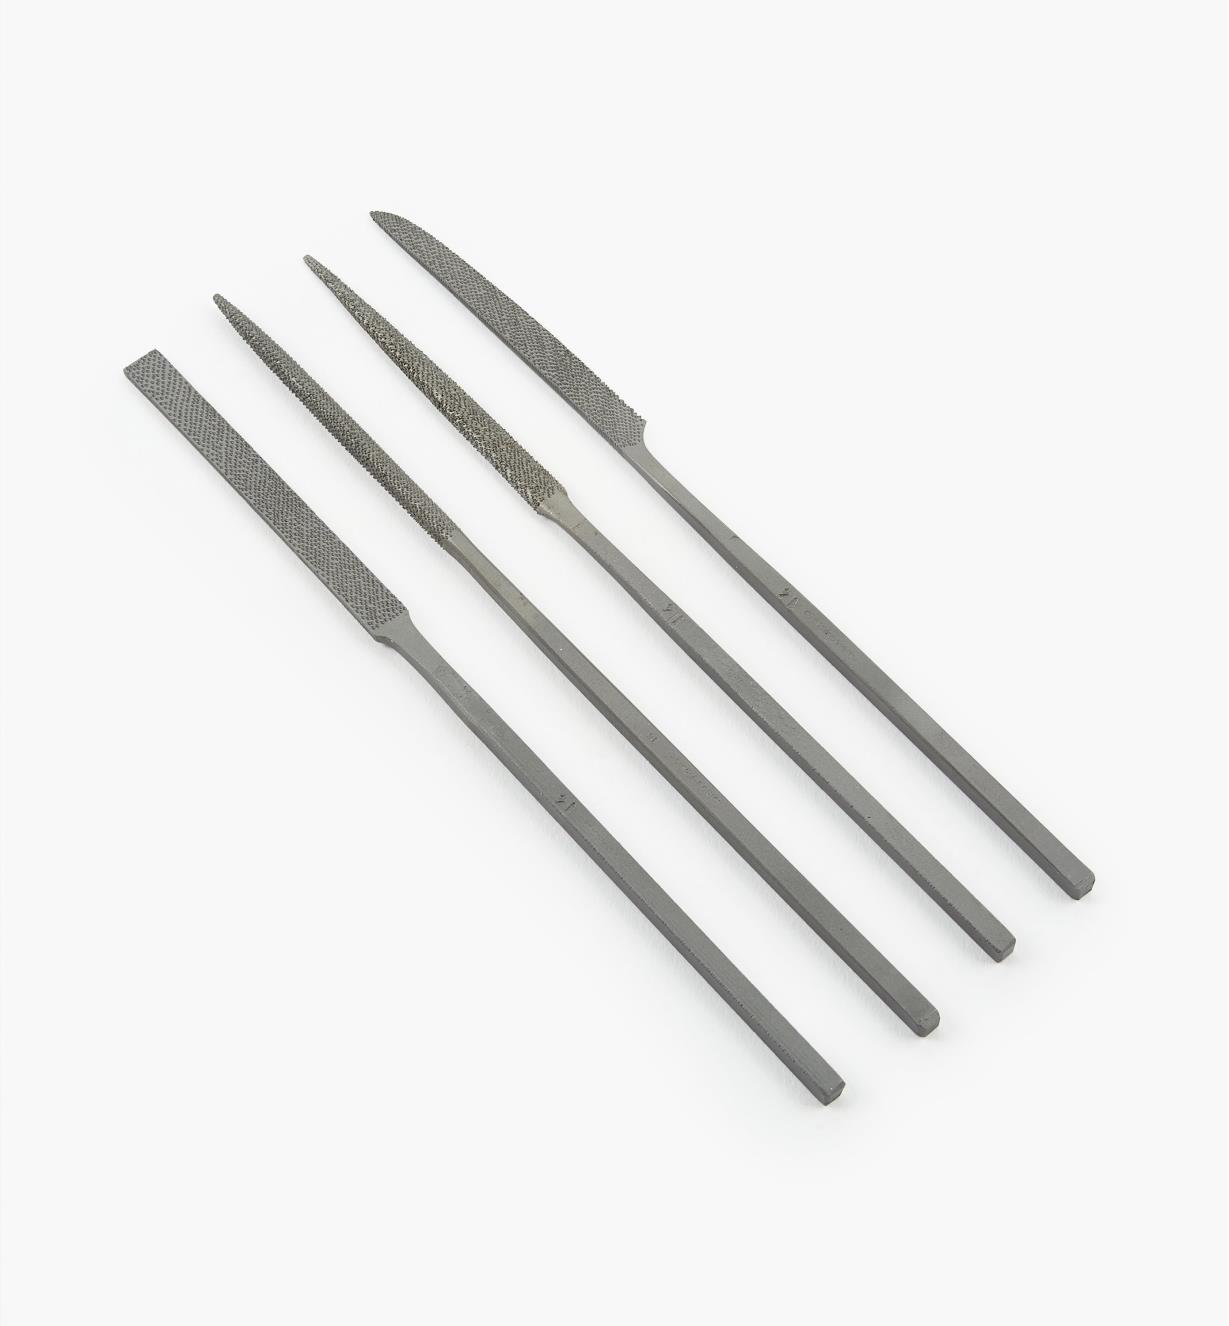 62W3034 - Auriou Needle Rasps, set of 4